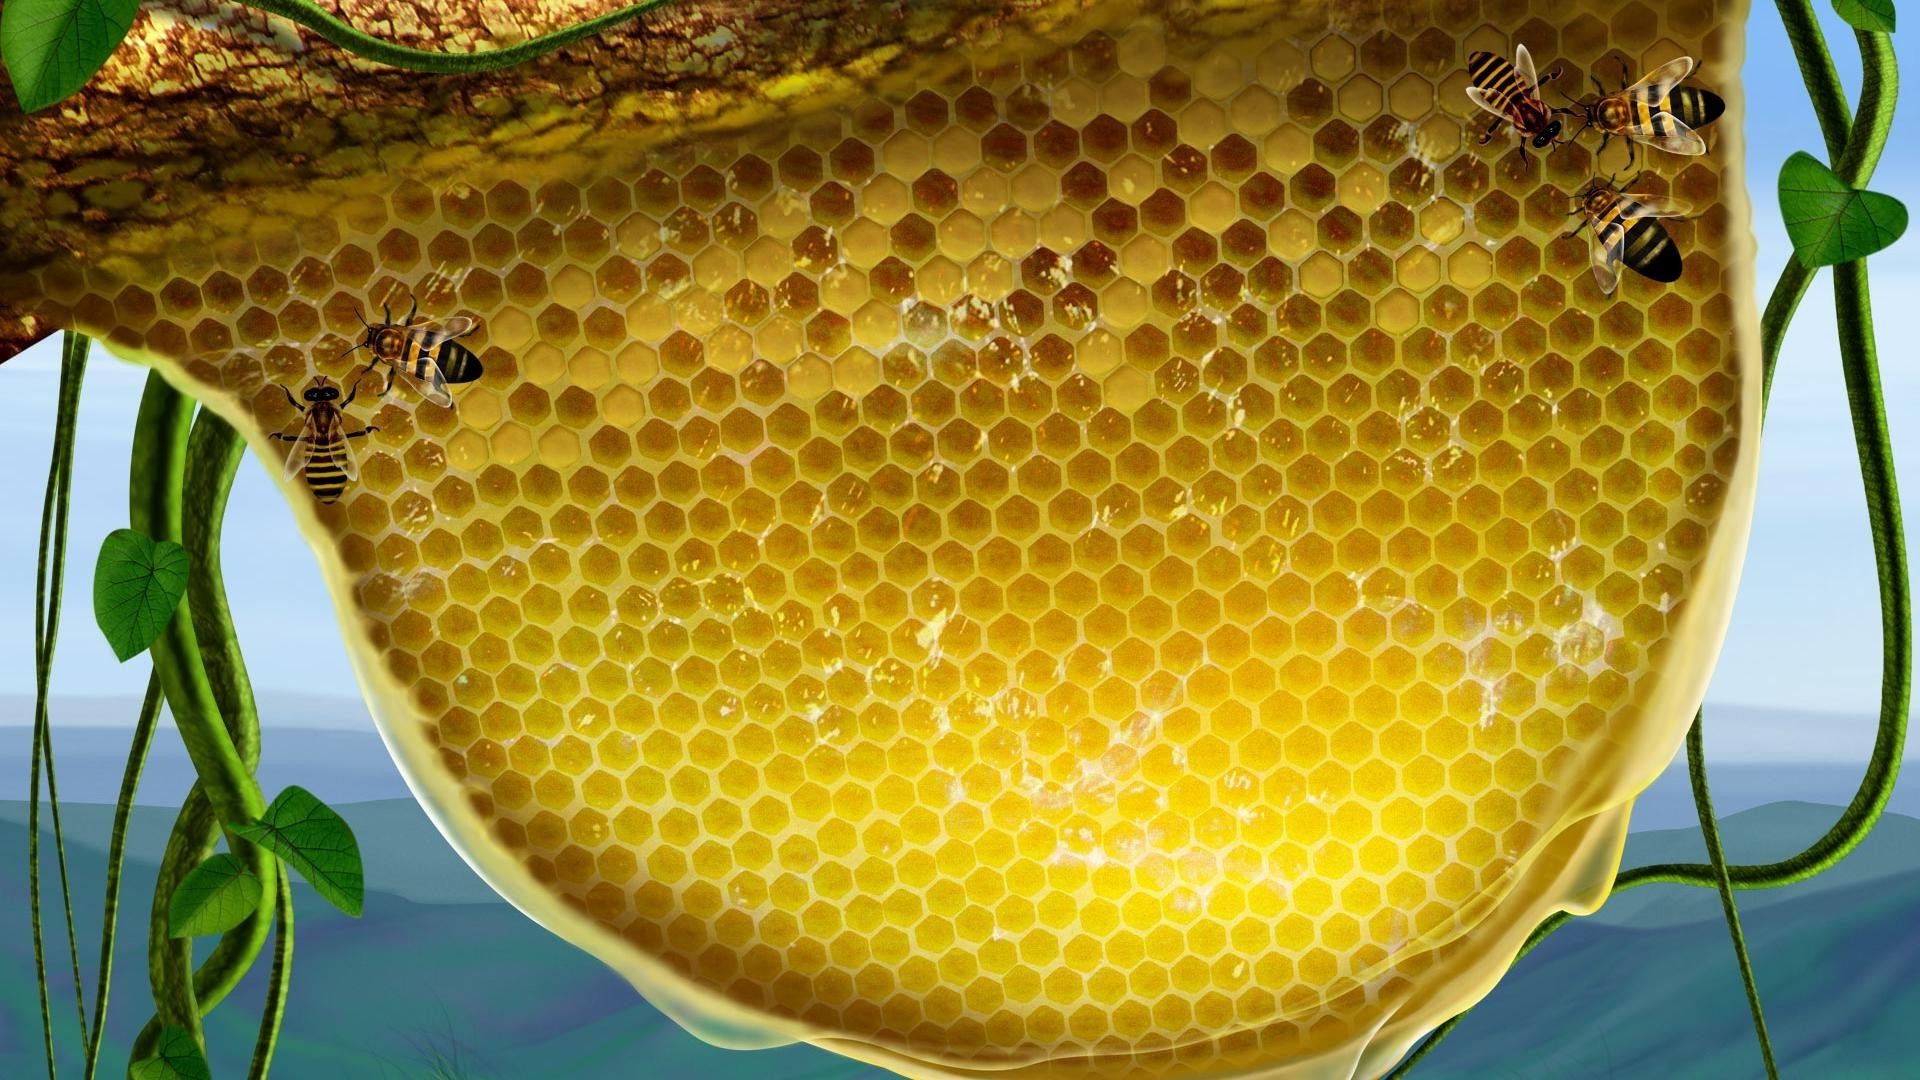 животные сота мед пчелиный воск пчелка улей сотовый телефон воск шестигранник гребень пчеловодство кондитерское изделие пасека золото пчелки пыльца полигон здоровый насекомое личинка